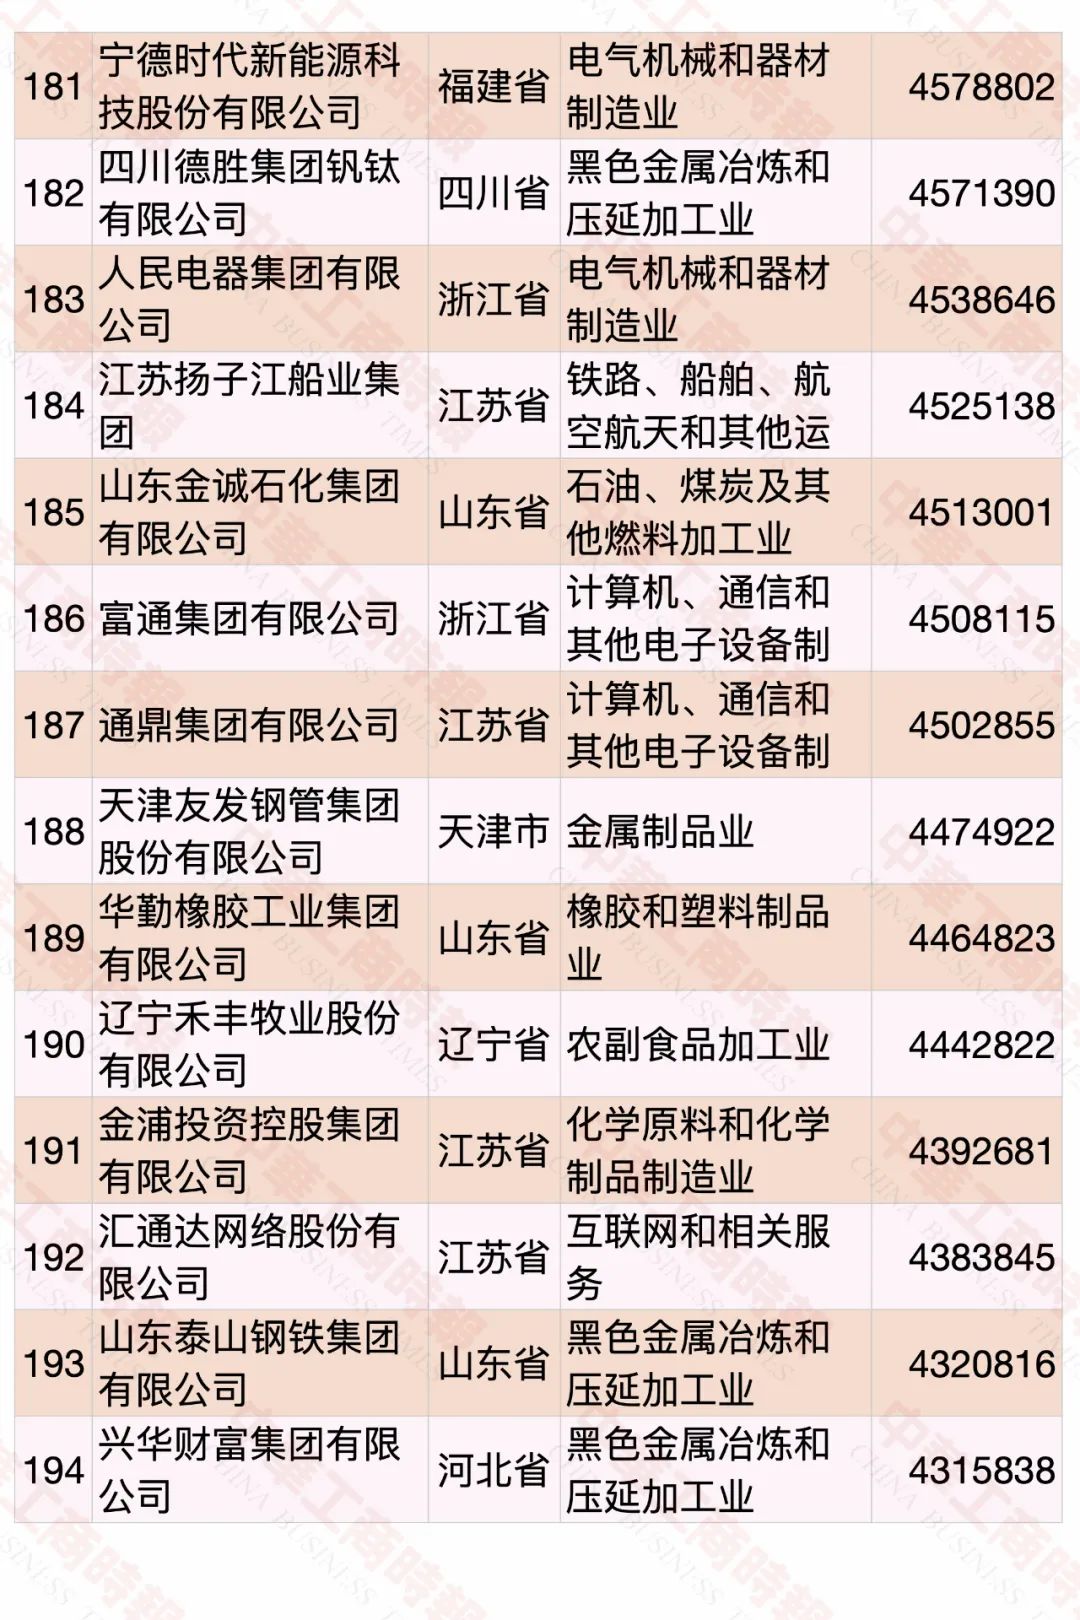 2020中国民营企业500强榜单发布 华为蝉联第一